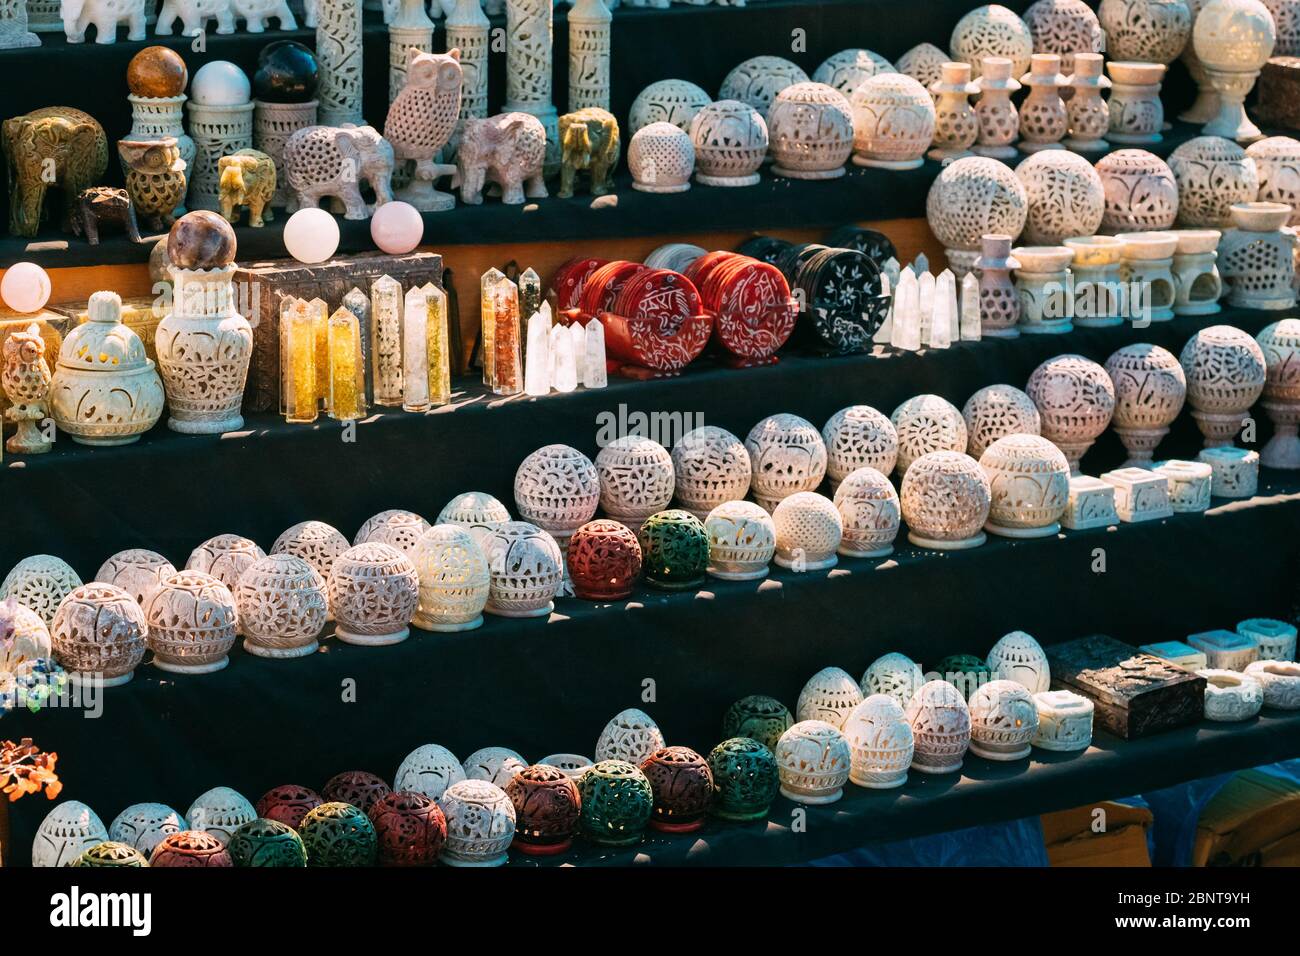 Inde. Marché avec de nombreux traditionnels hauts en couleur indiens fait main des bougies en céramique sculptée. Souvenirs populaires de l'Inde. Banque D'Images